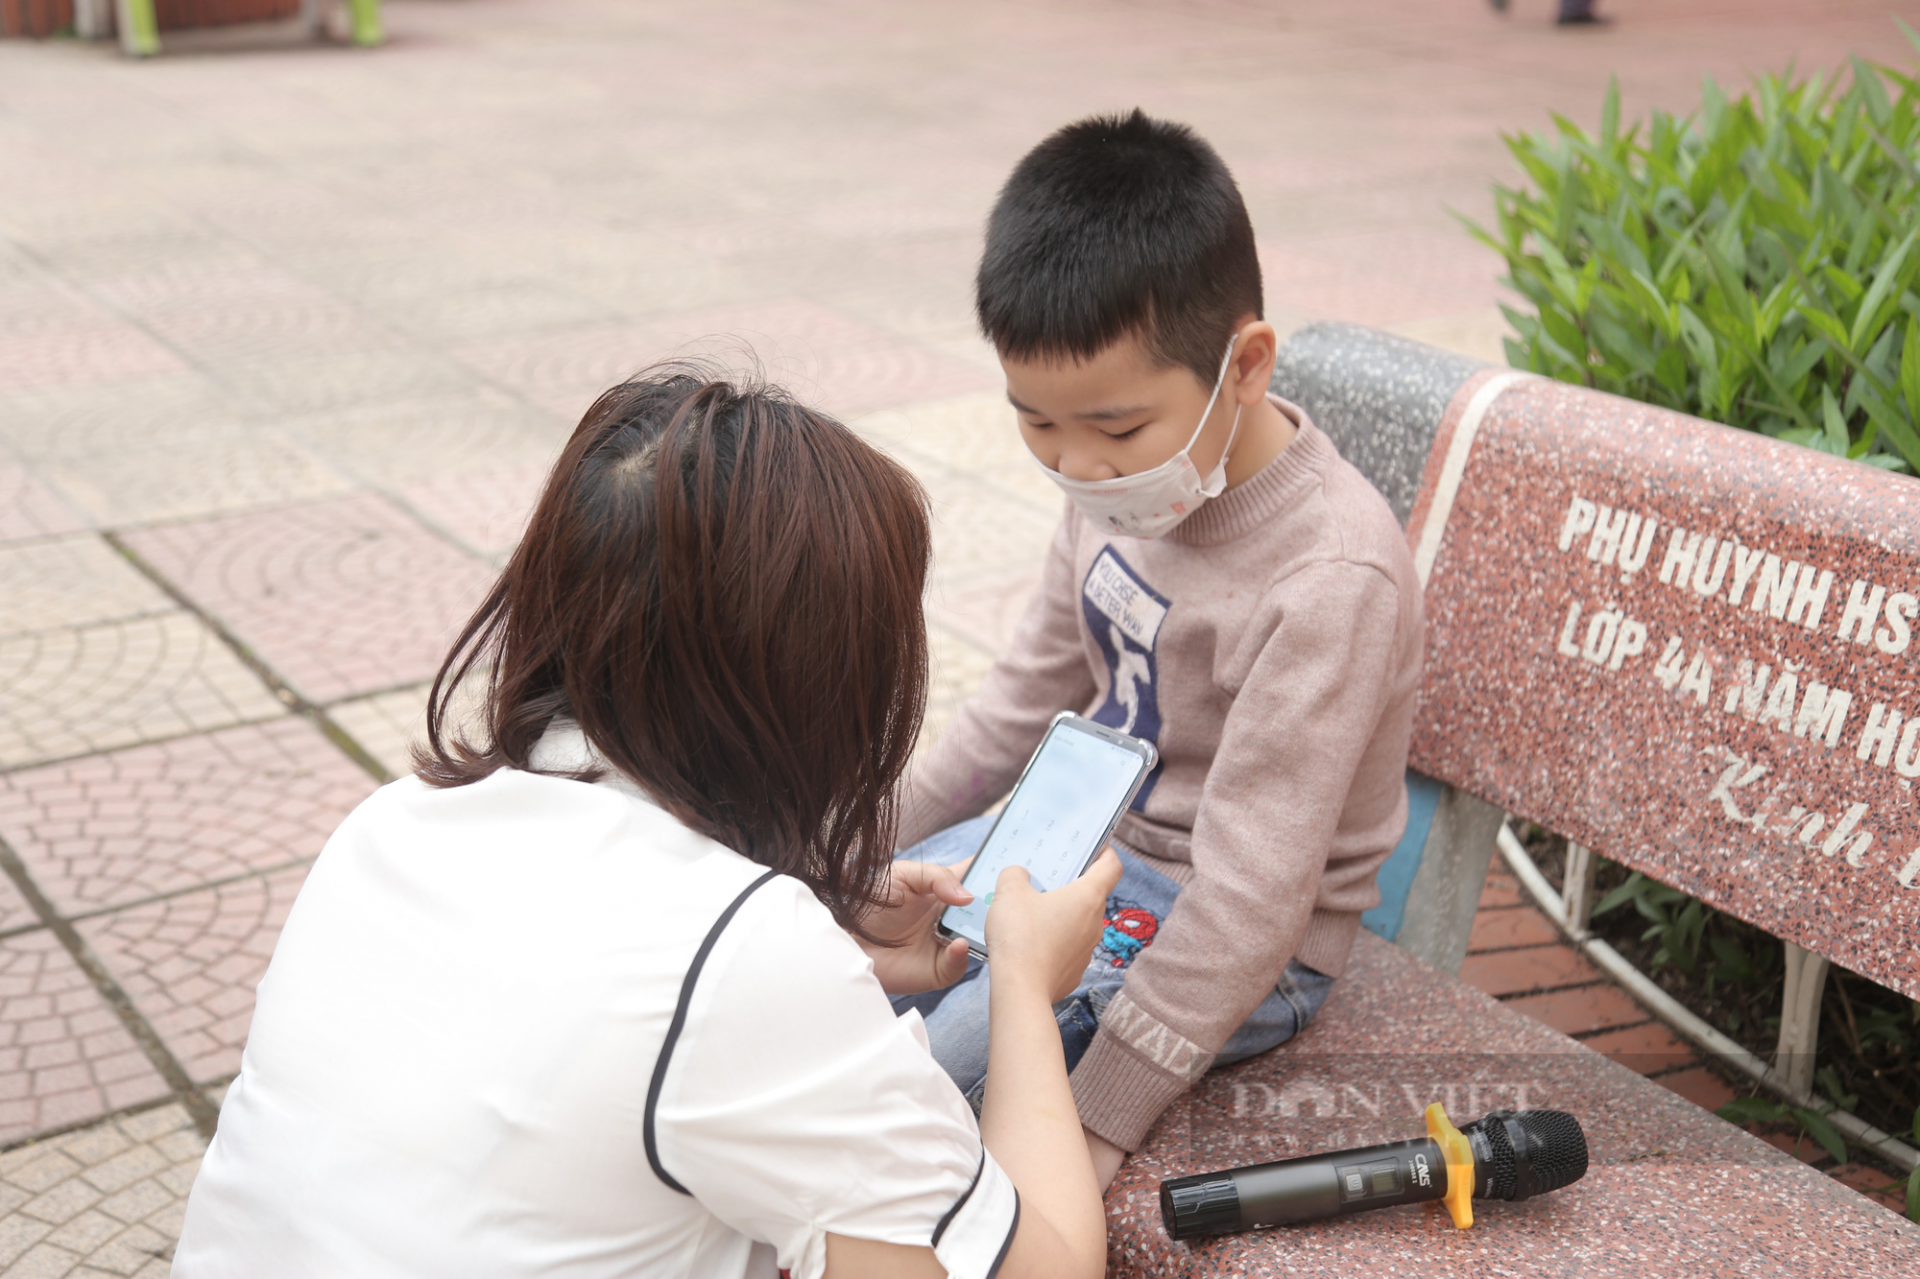 Cậu bé bị bố đưa đến nhầm trường đang ngồi đợi bố đến đưa đi học (Ảnh: Dân Việt).